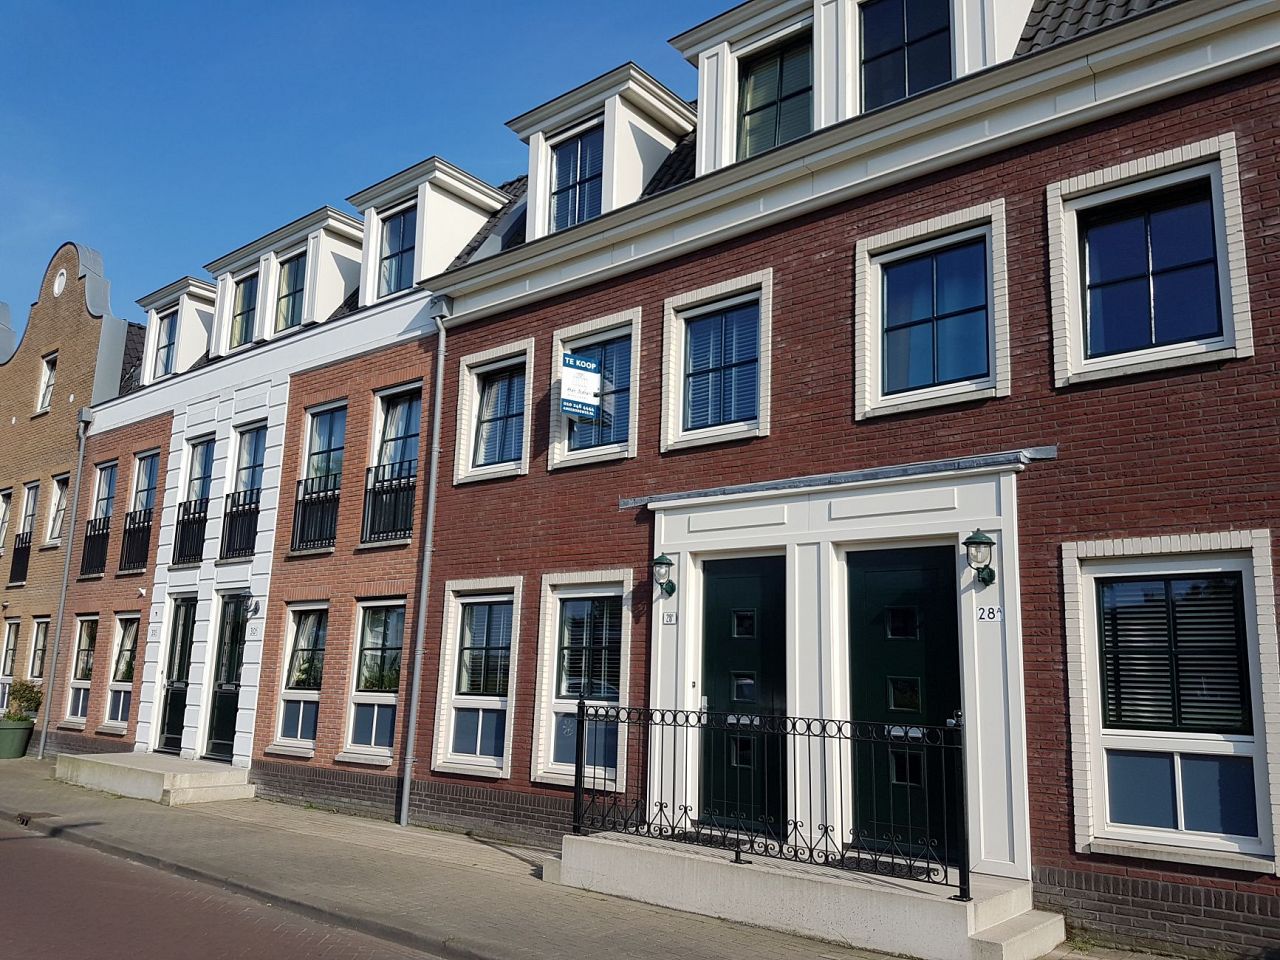 Overbieden op koophuis is in Schiedam schering en inslag